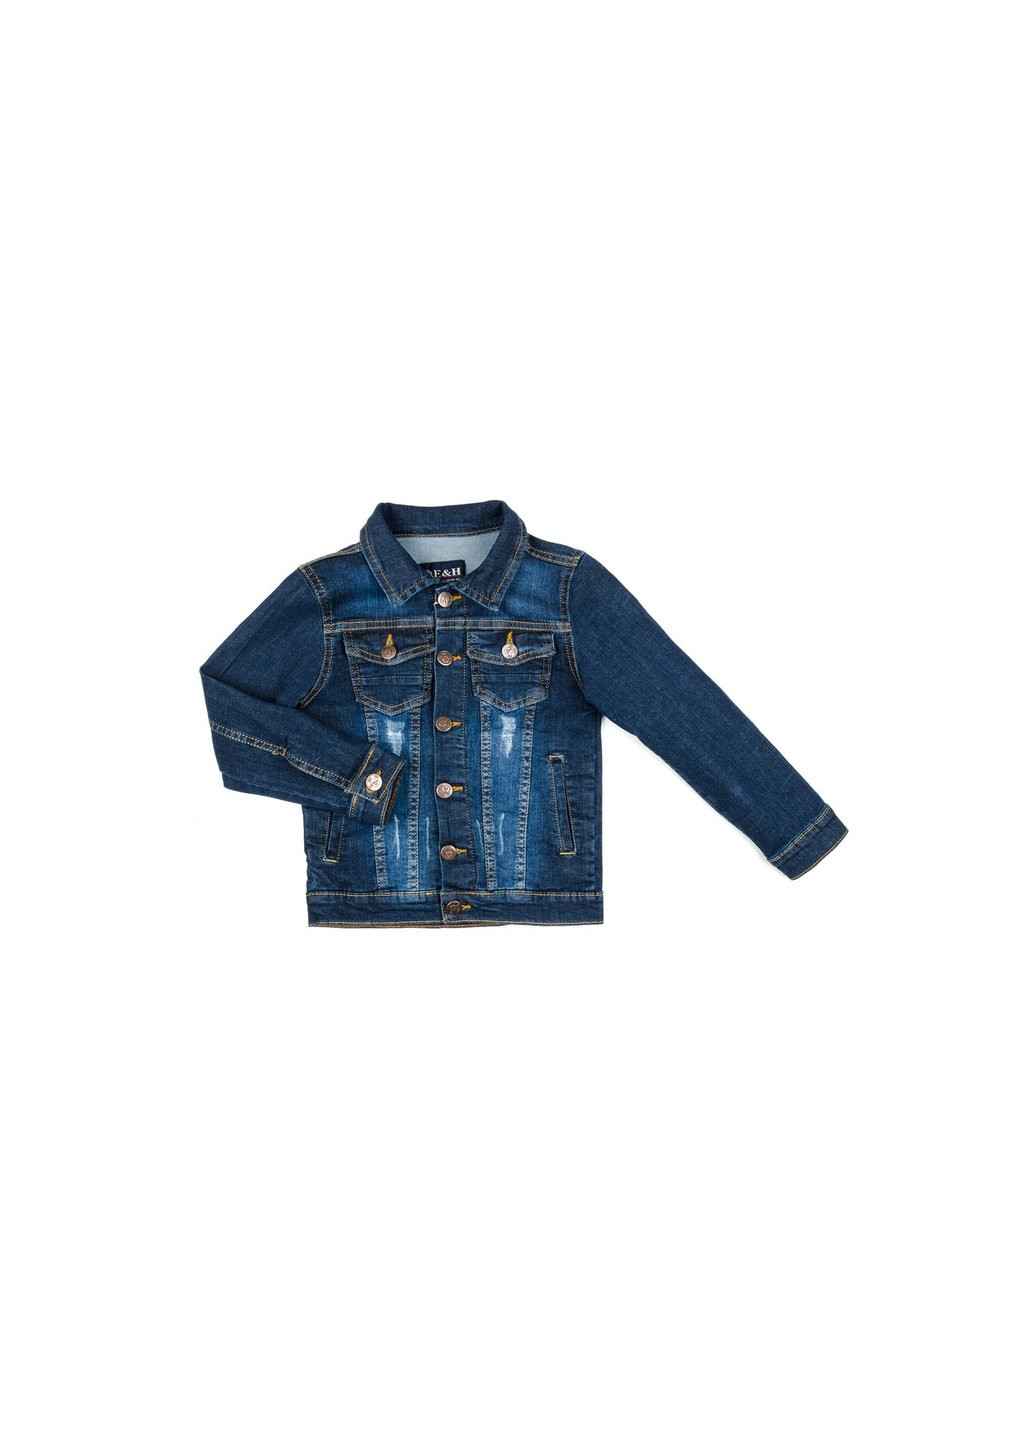 Блакитна демісезонна куртка джинсова (20057-116b-blue) Breeze